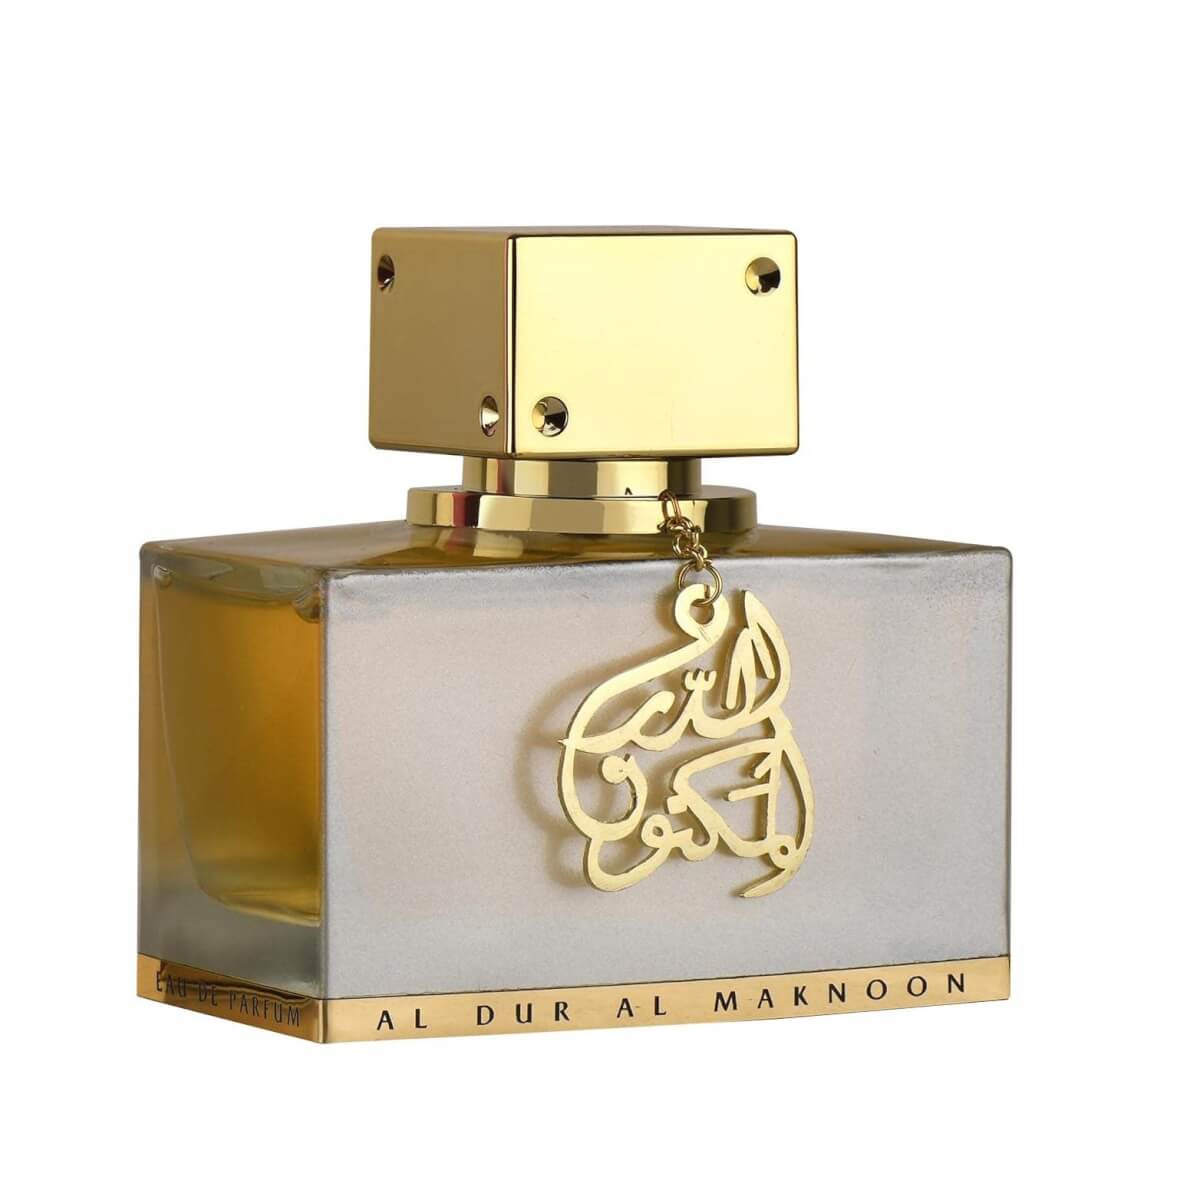 Al Dur Al Maknoon Gold Perfume / Eau De Parfum 100Ml By Lattafa